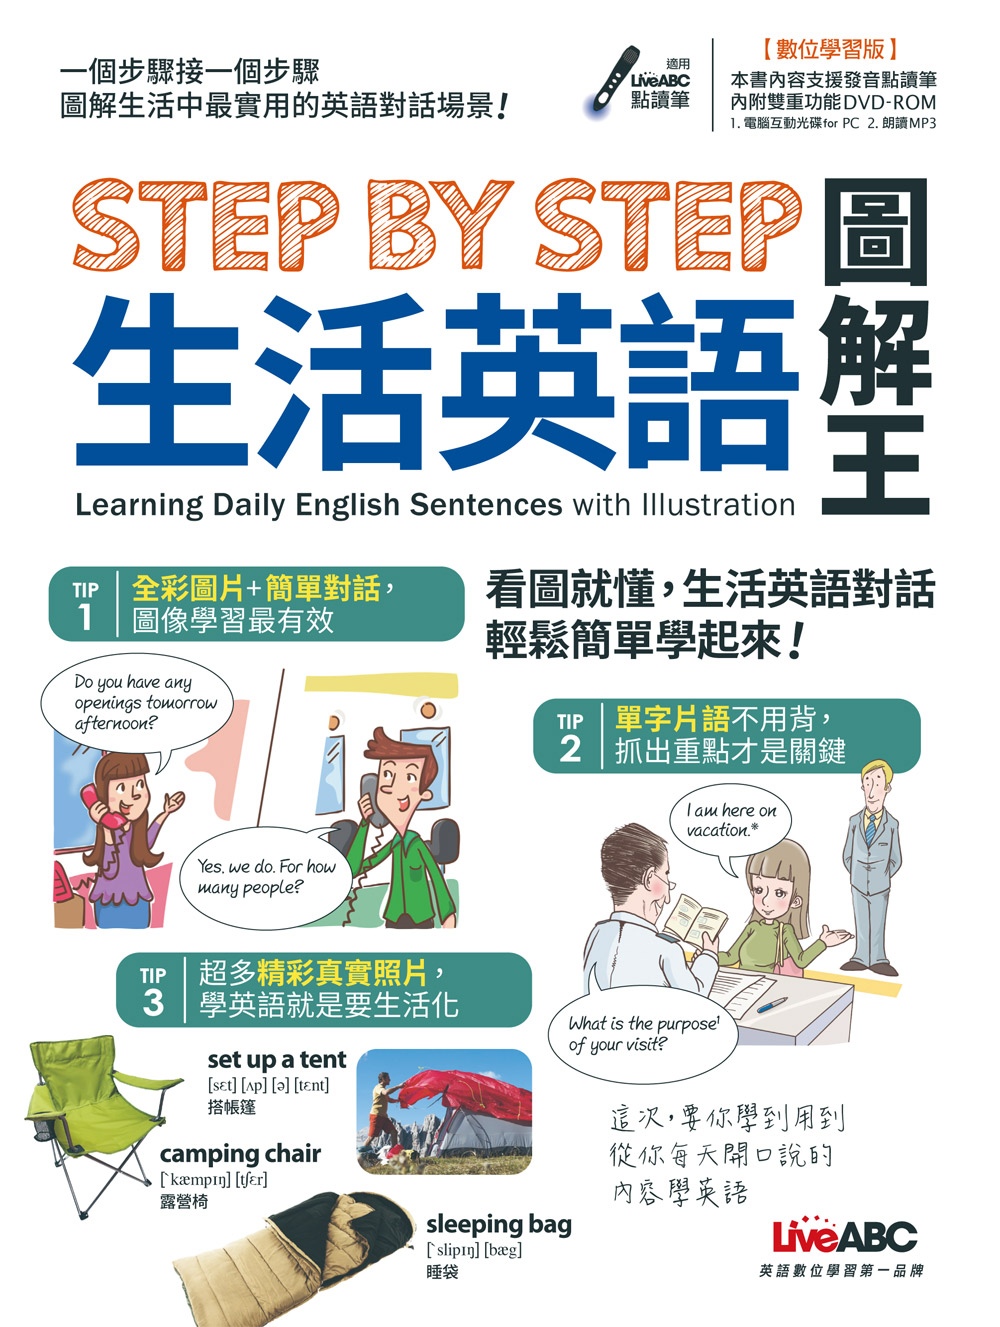 STEP BY STEP 生活英語圖解王